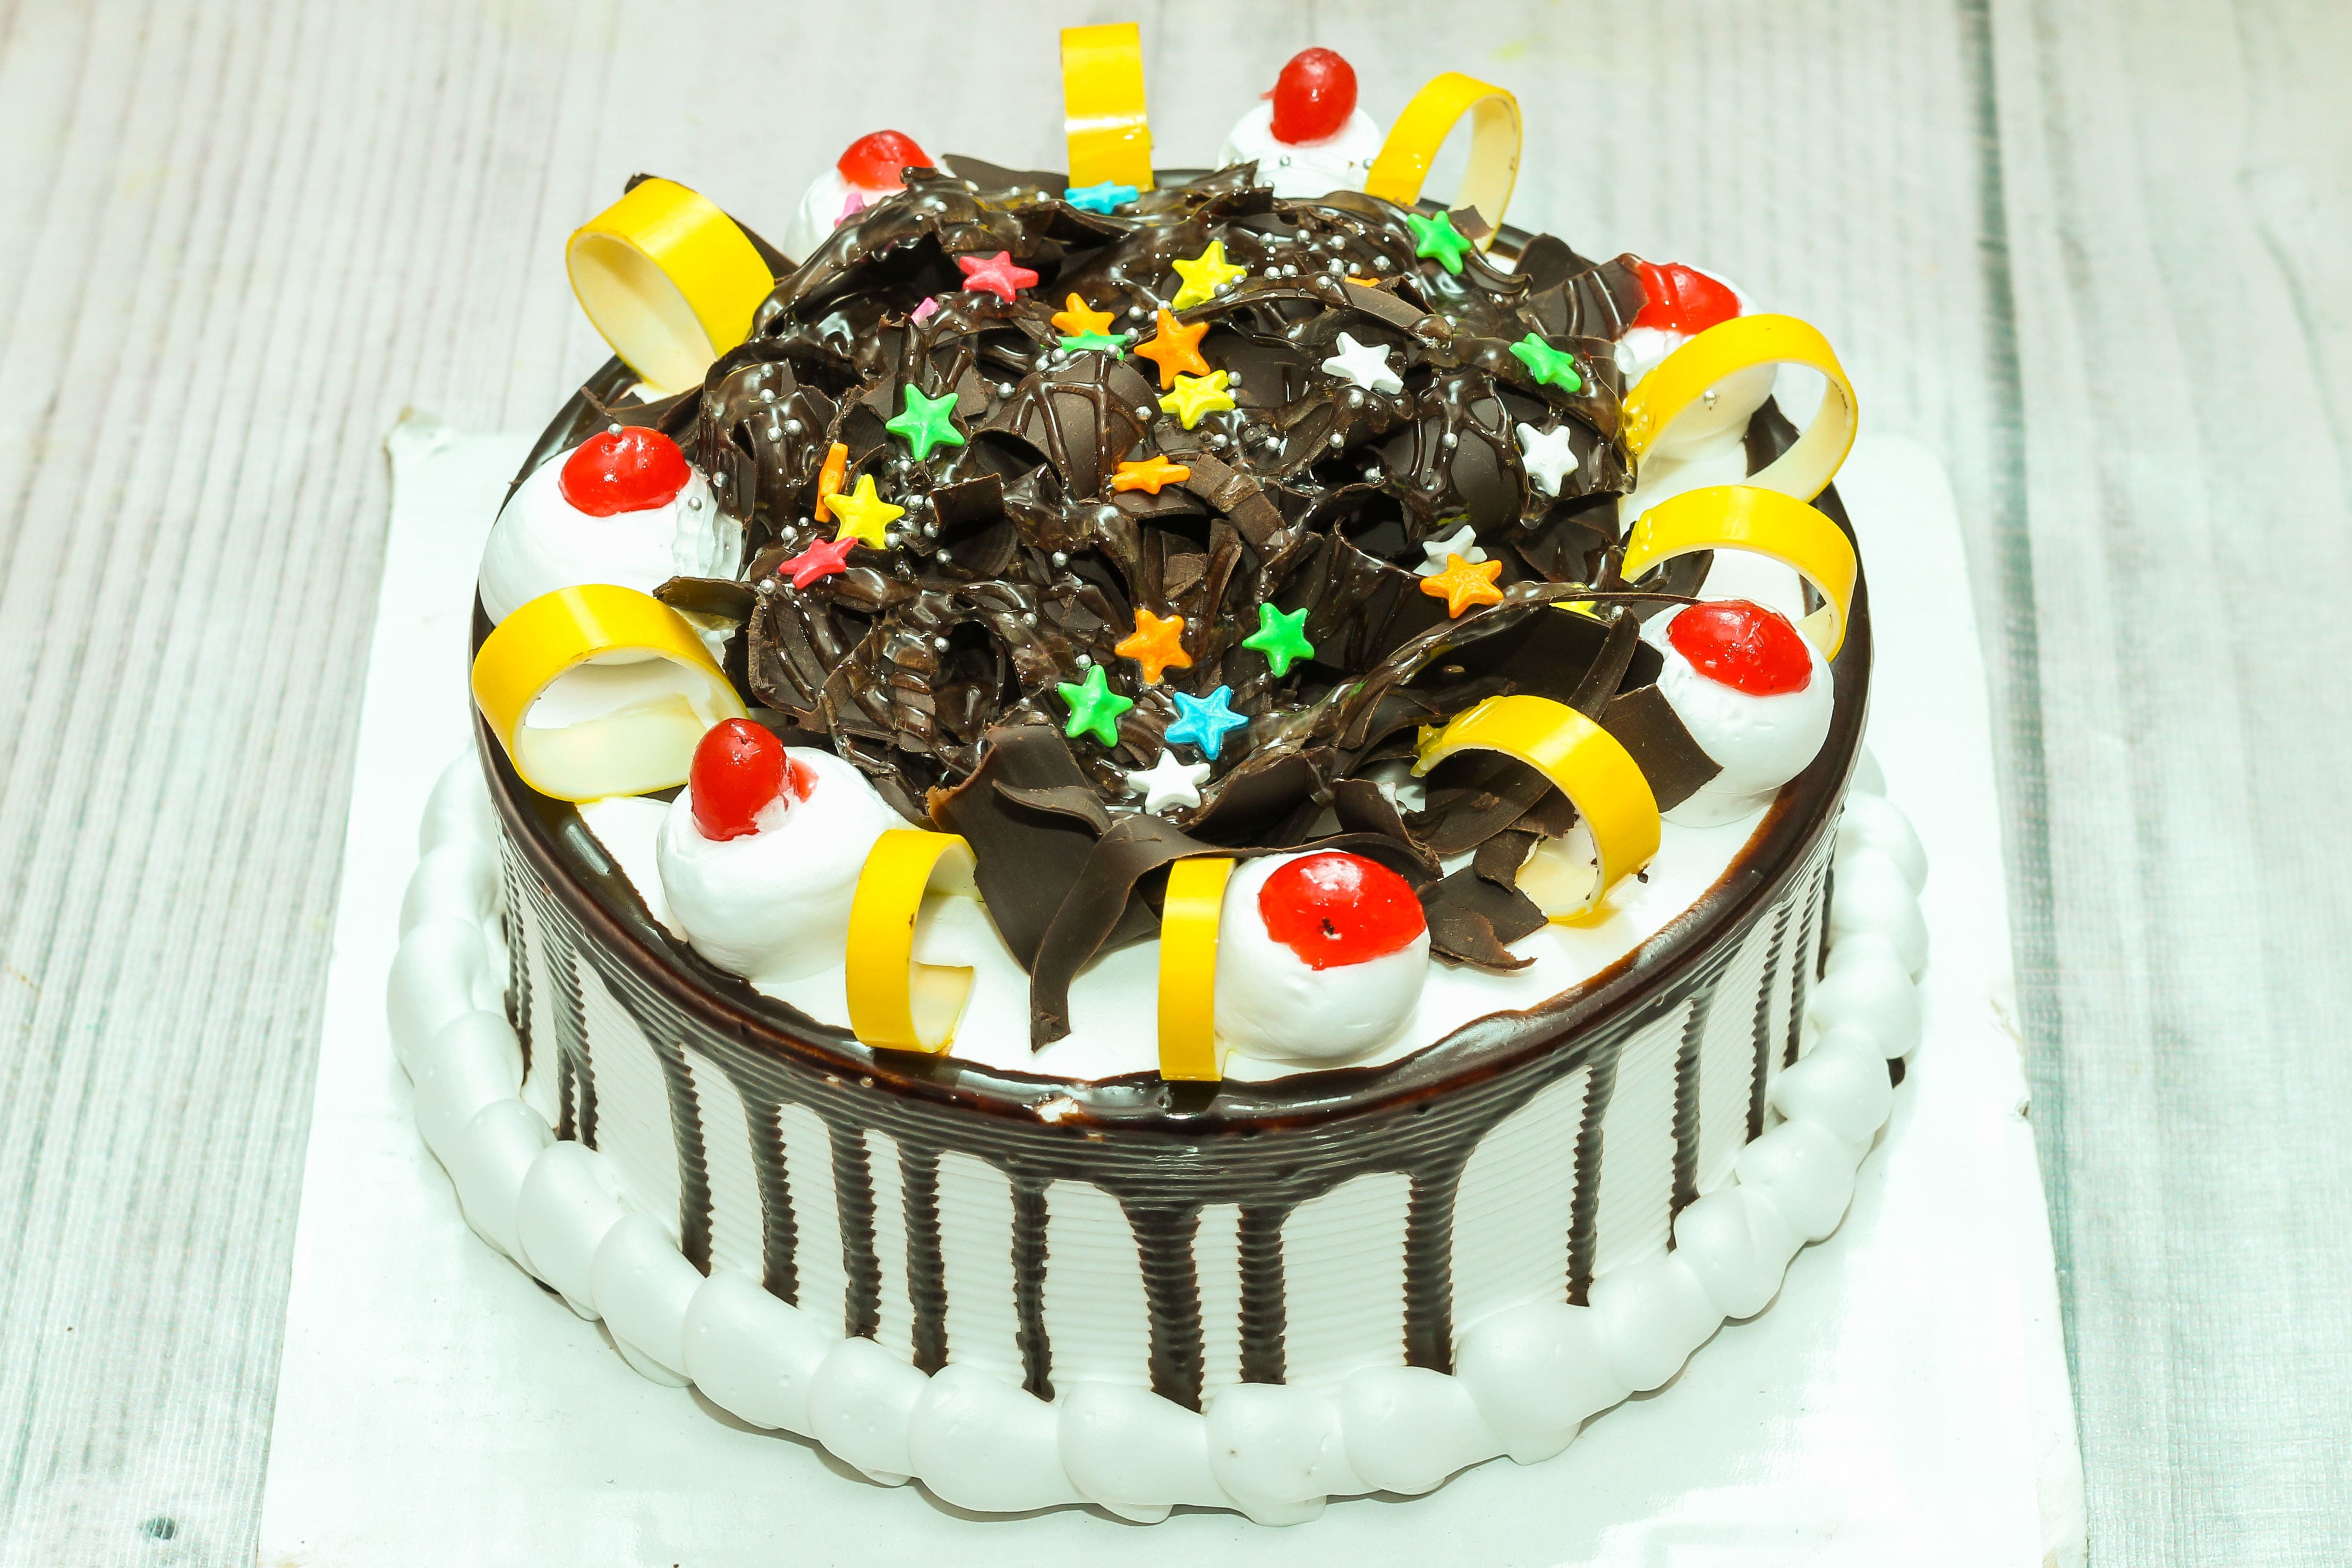 Cake O Fresh, VIP Road order online - Zomato